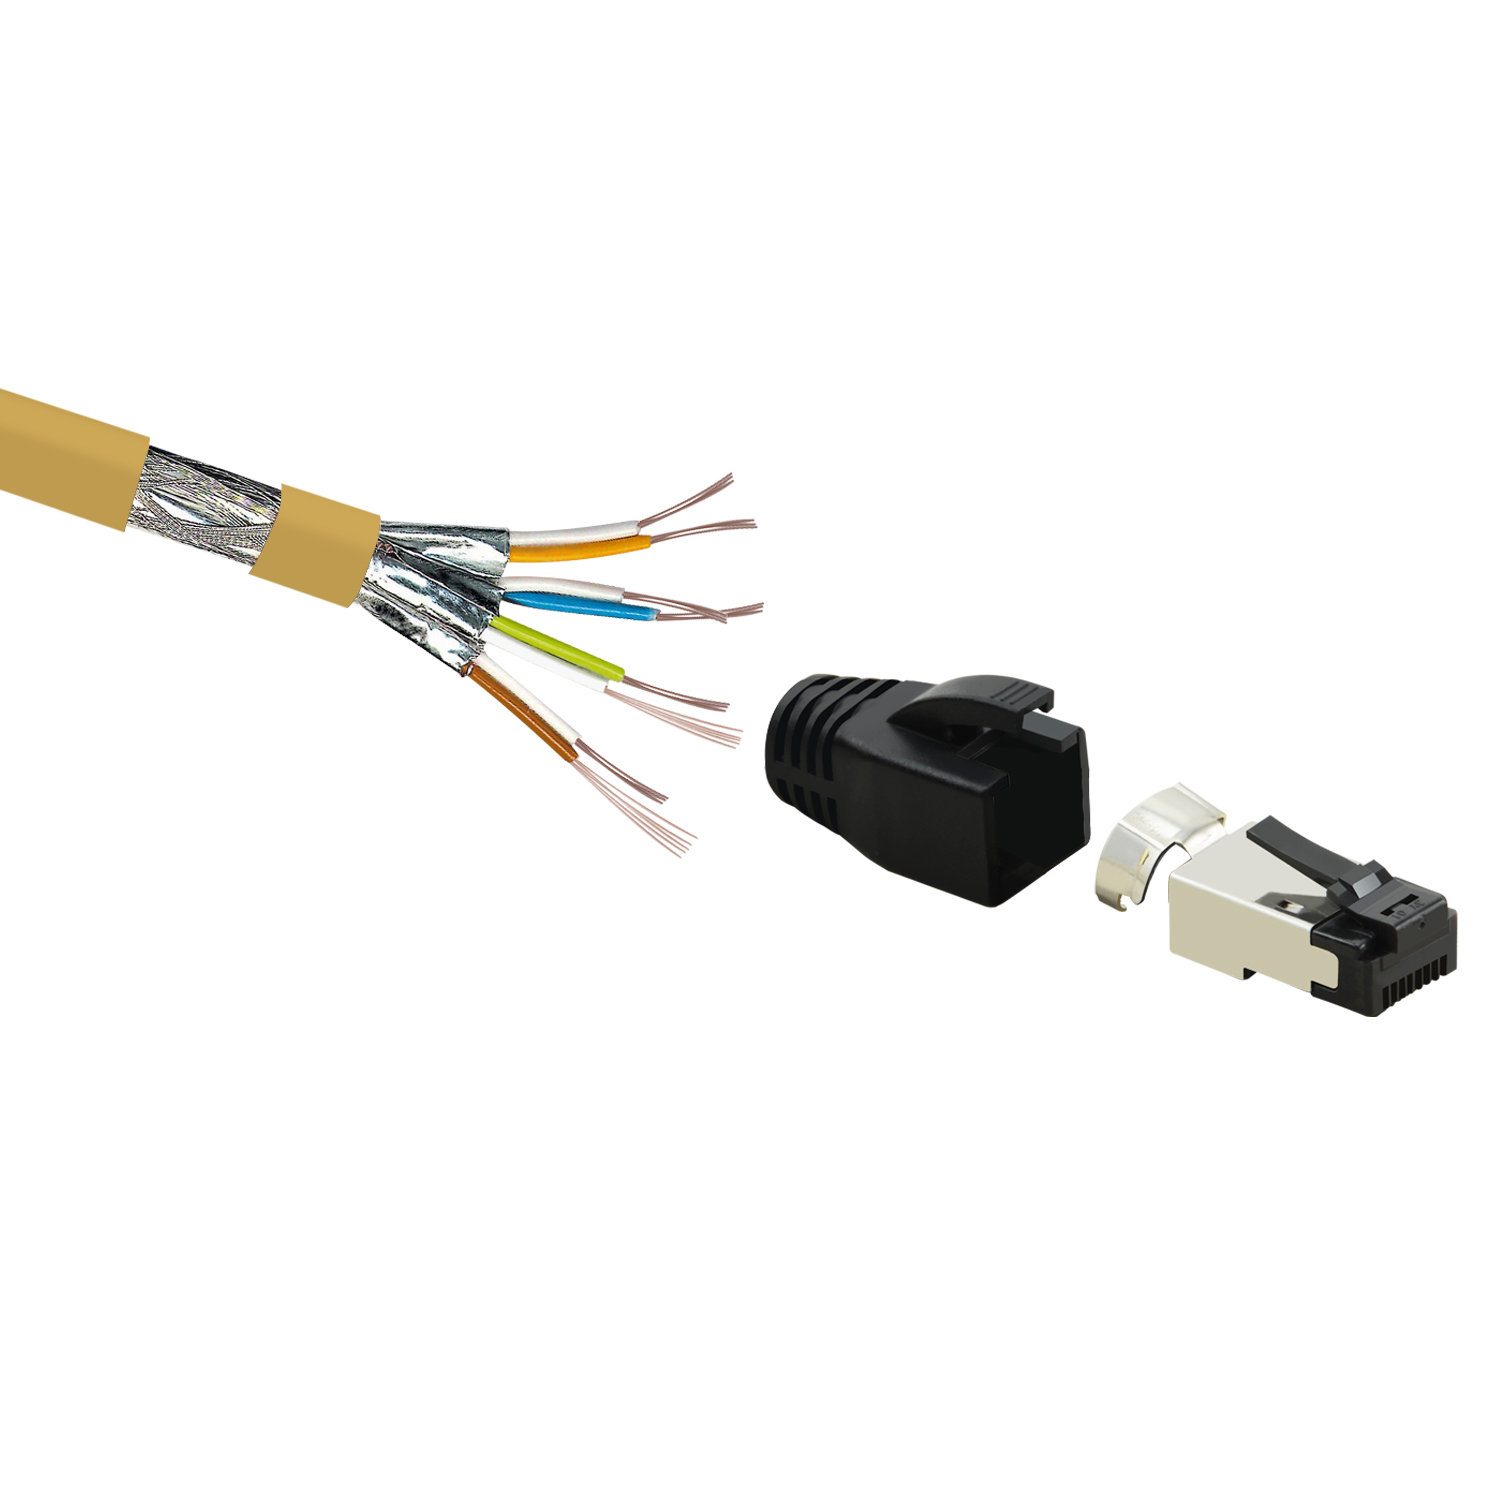 0,25m S/FTP Patchkabel TPFNET 40 GBit, Netzwerkkabel, m / Netzwerkkabel gelb, 0,25